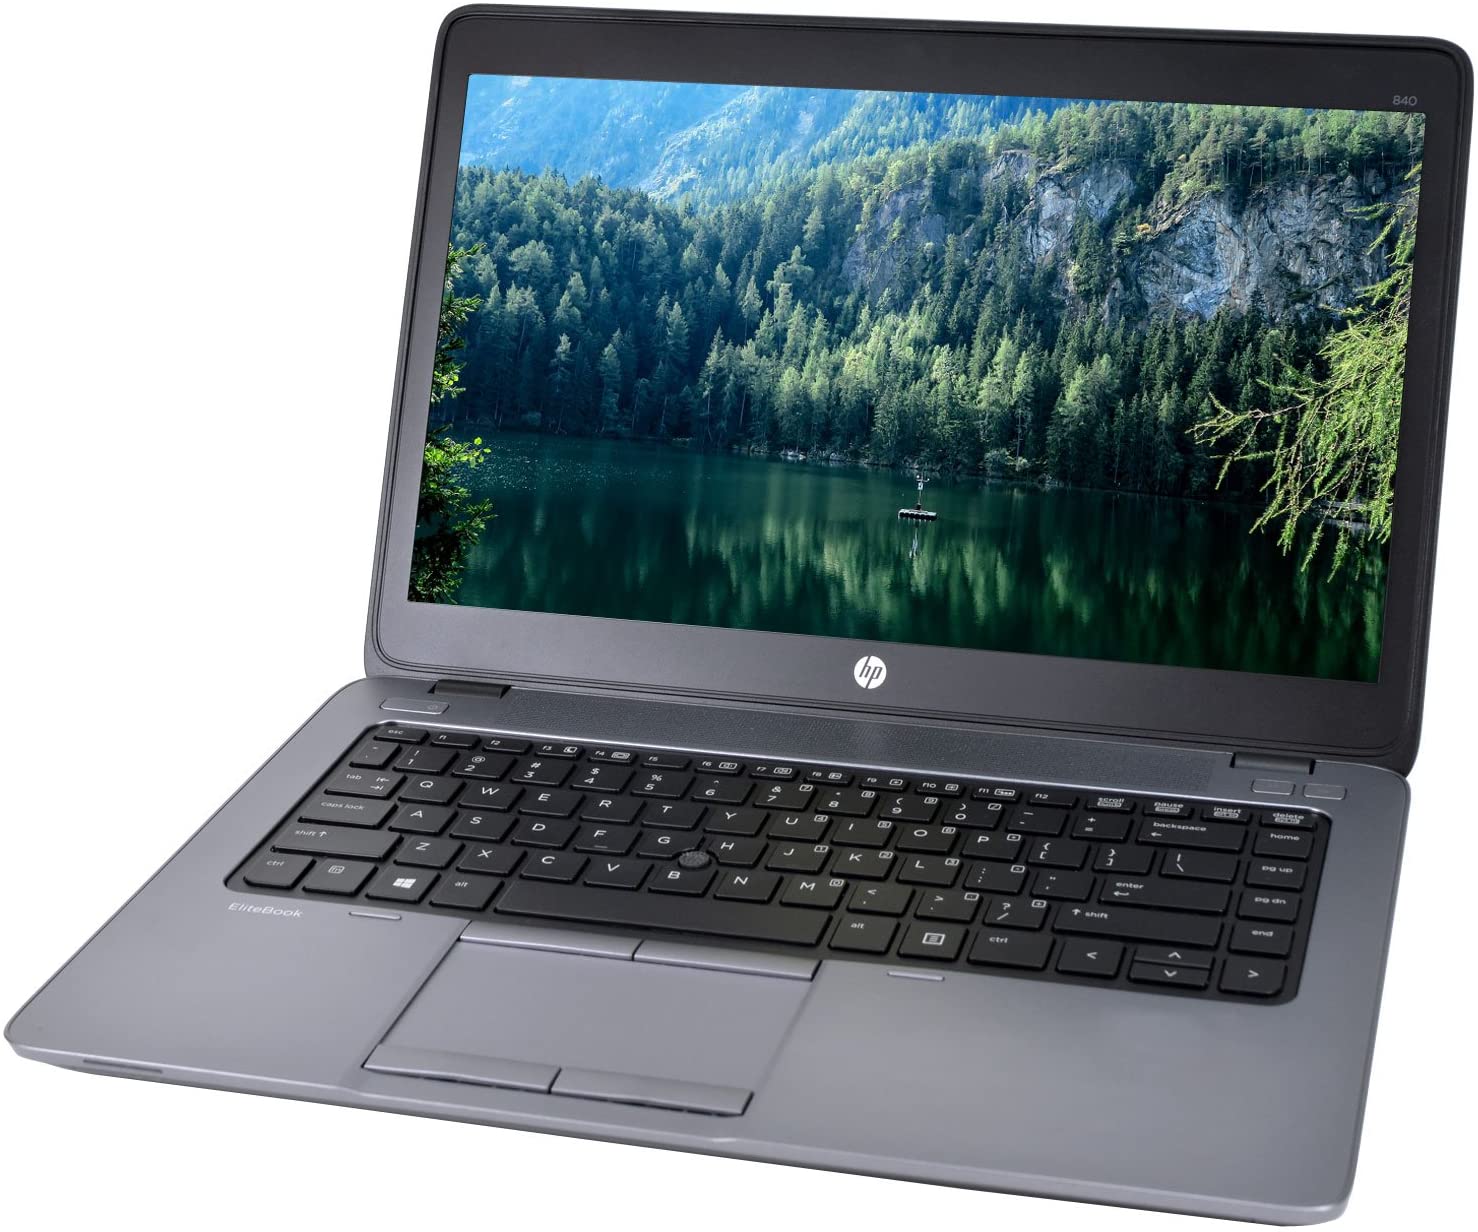 Ordinateur portable HP EliteBook 840 G2 14 pouces remis à neuf (Intel Core i5-5300U 2,3 GHz/8 Go de RAM/128 Go de SSD/Windows 10 Pro 64 bits)